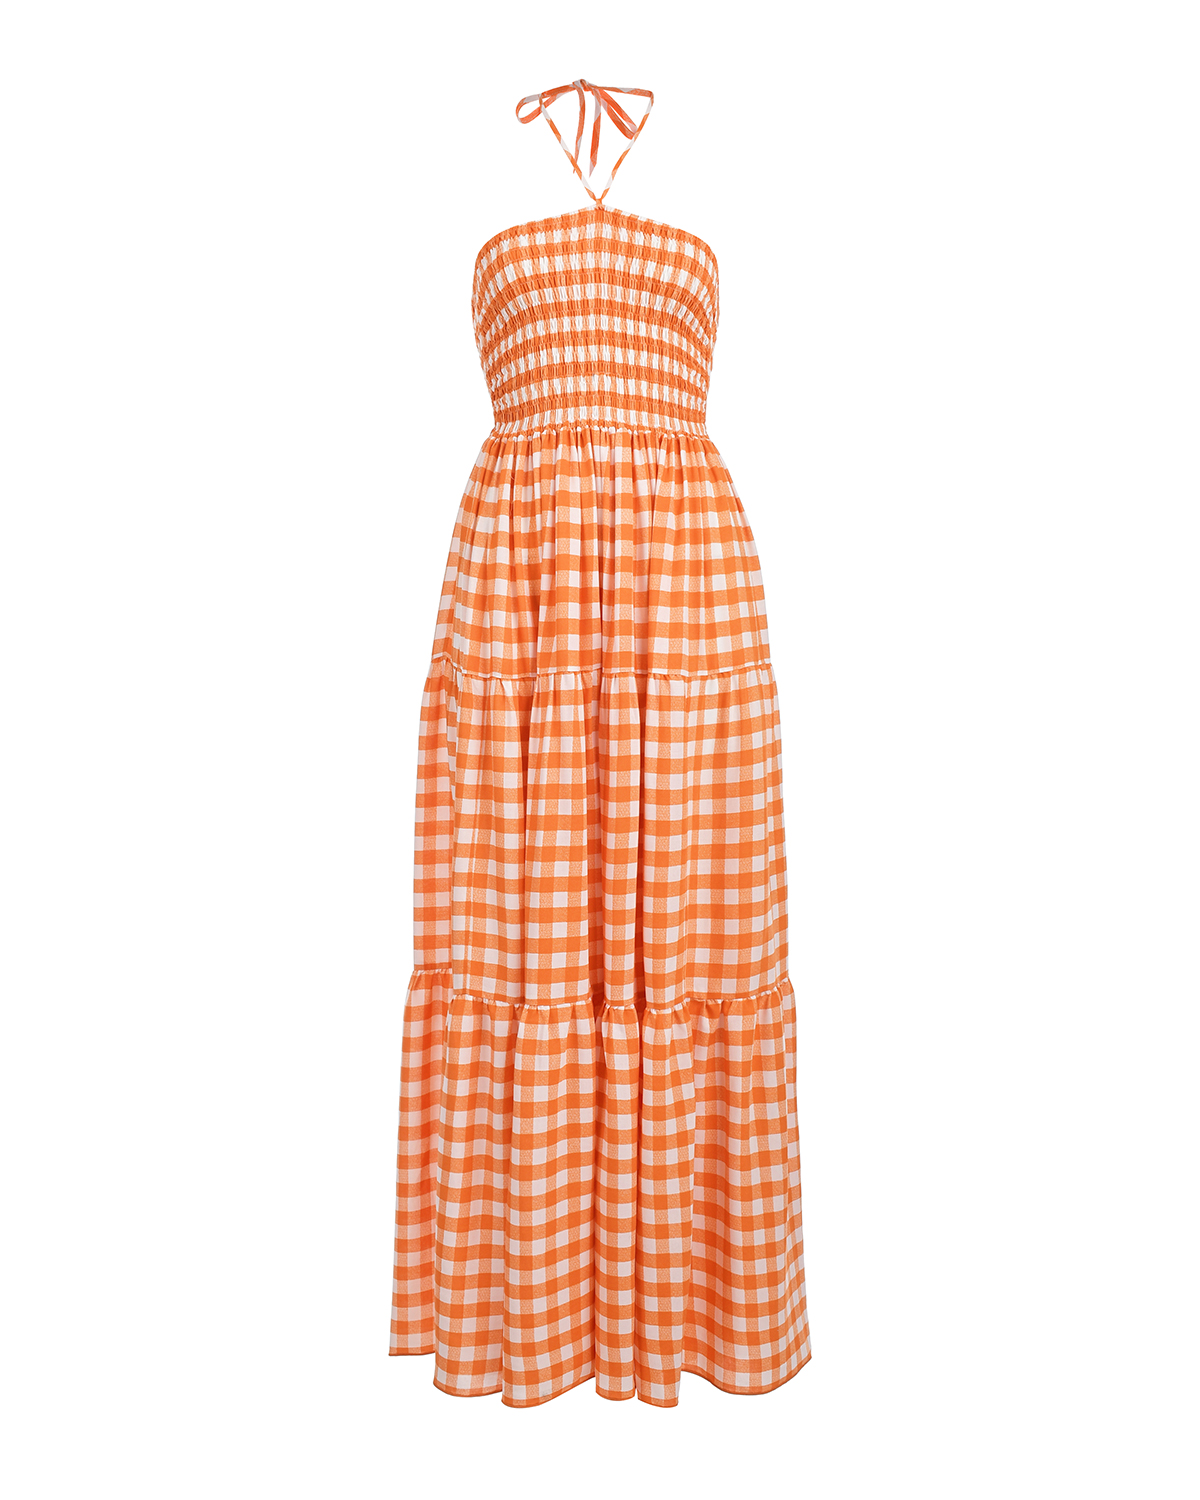 Платье в оранжево-белую клетку Dan Maralex, размер 42, цвет оранжевый - фото 1